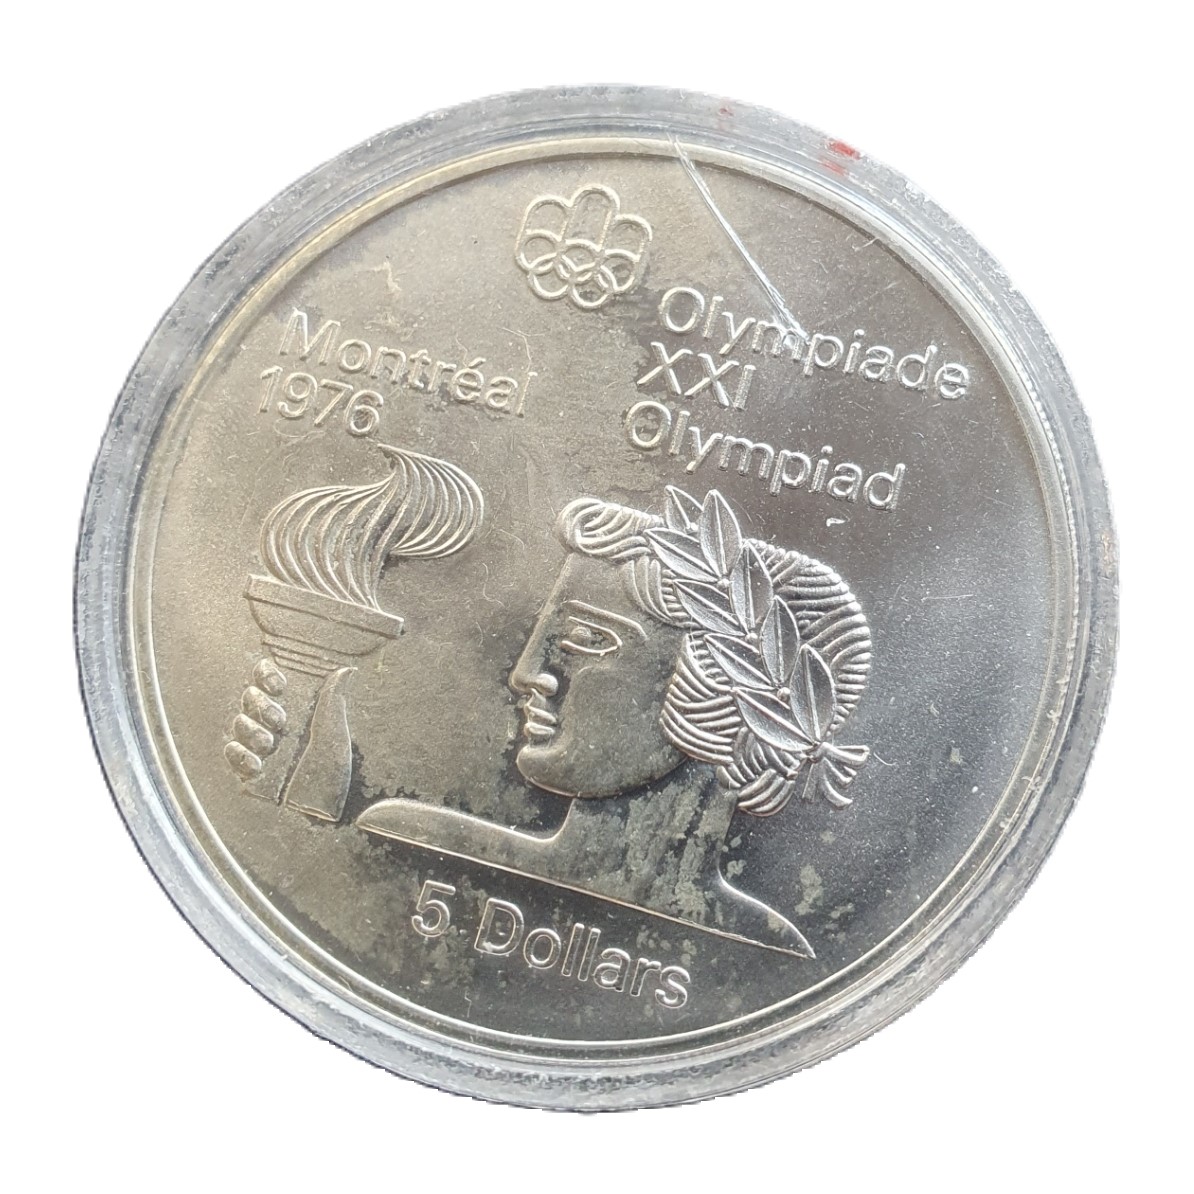  Canada 5 Dollars 1974 Elizabeth II Olympiade XXI Montreal 1976 Silber Münze 22,5 g fein   